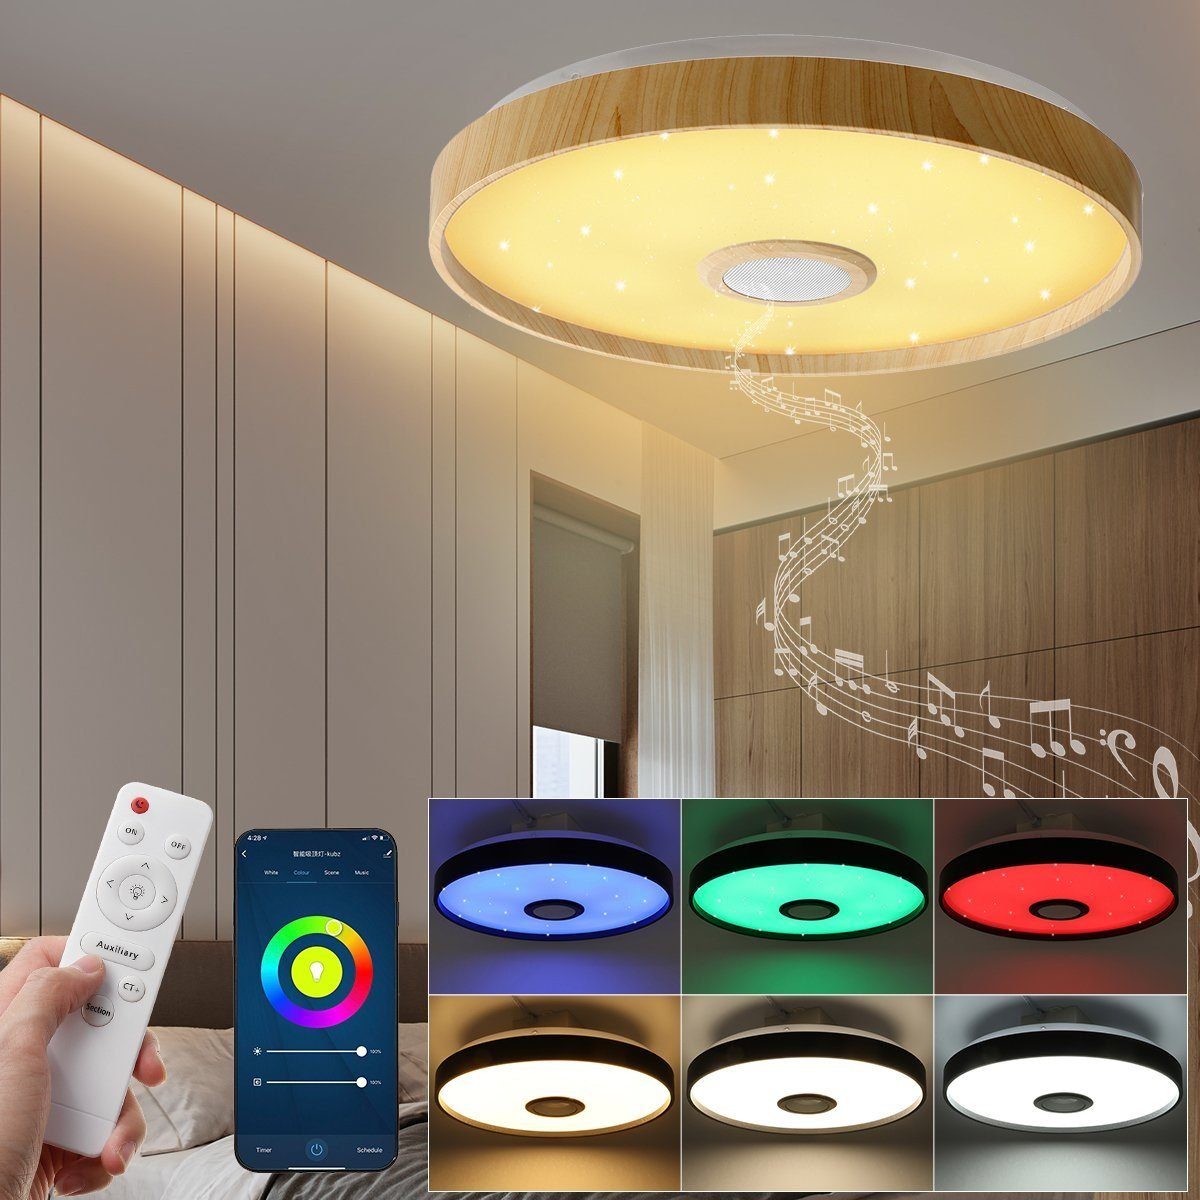 ECsee Dimmbar 100W LED Deckenleuchte Deckenlampe bluetooth Lautsprecher Remote 